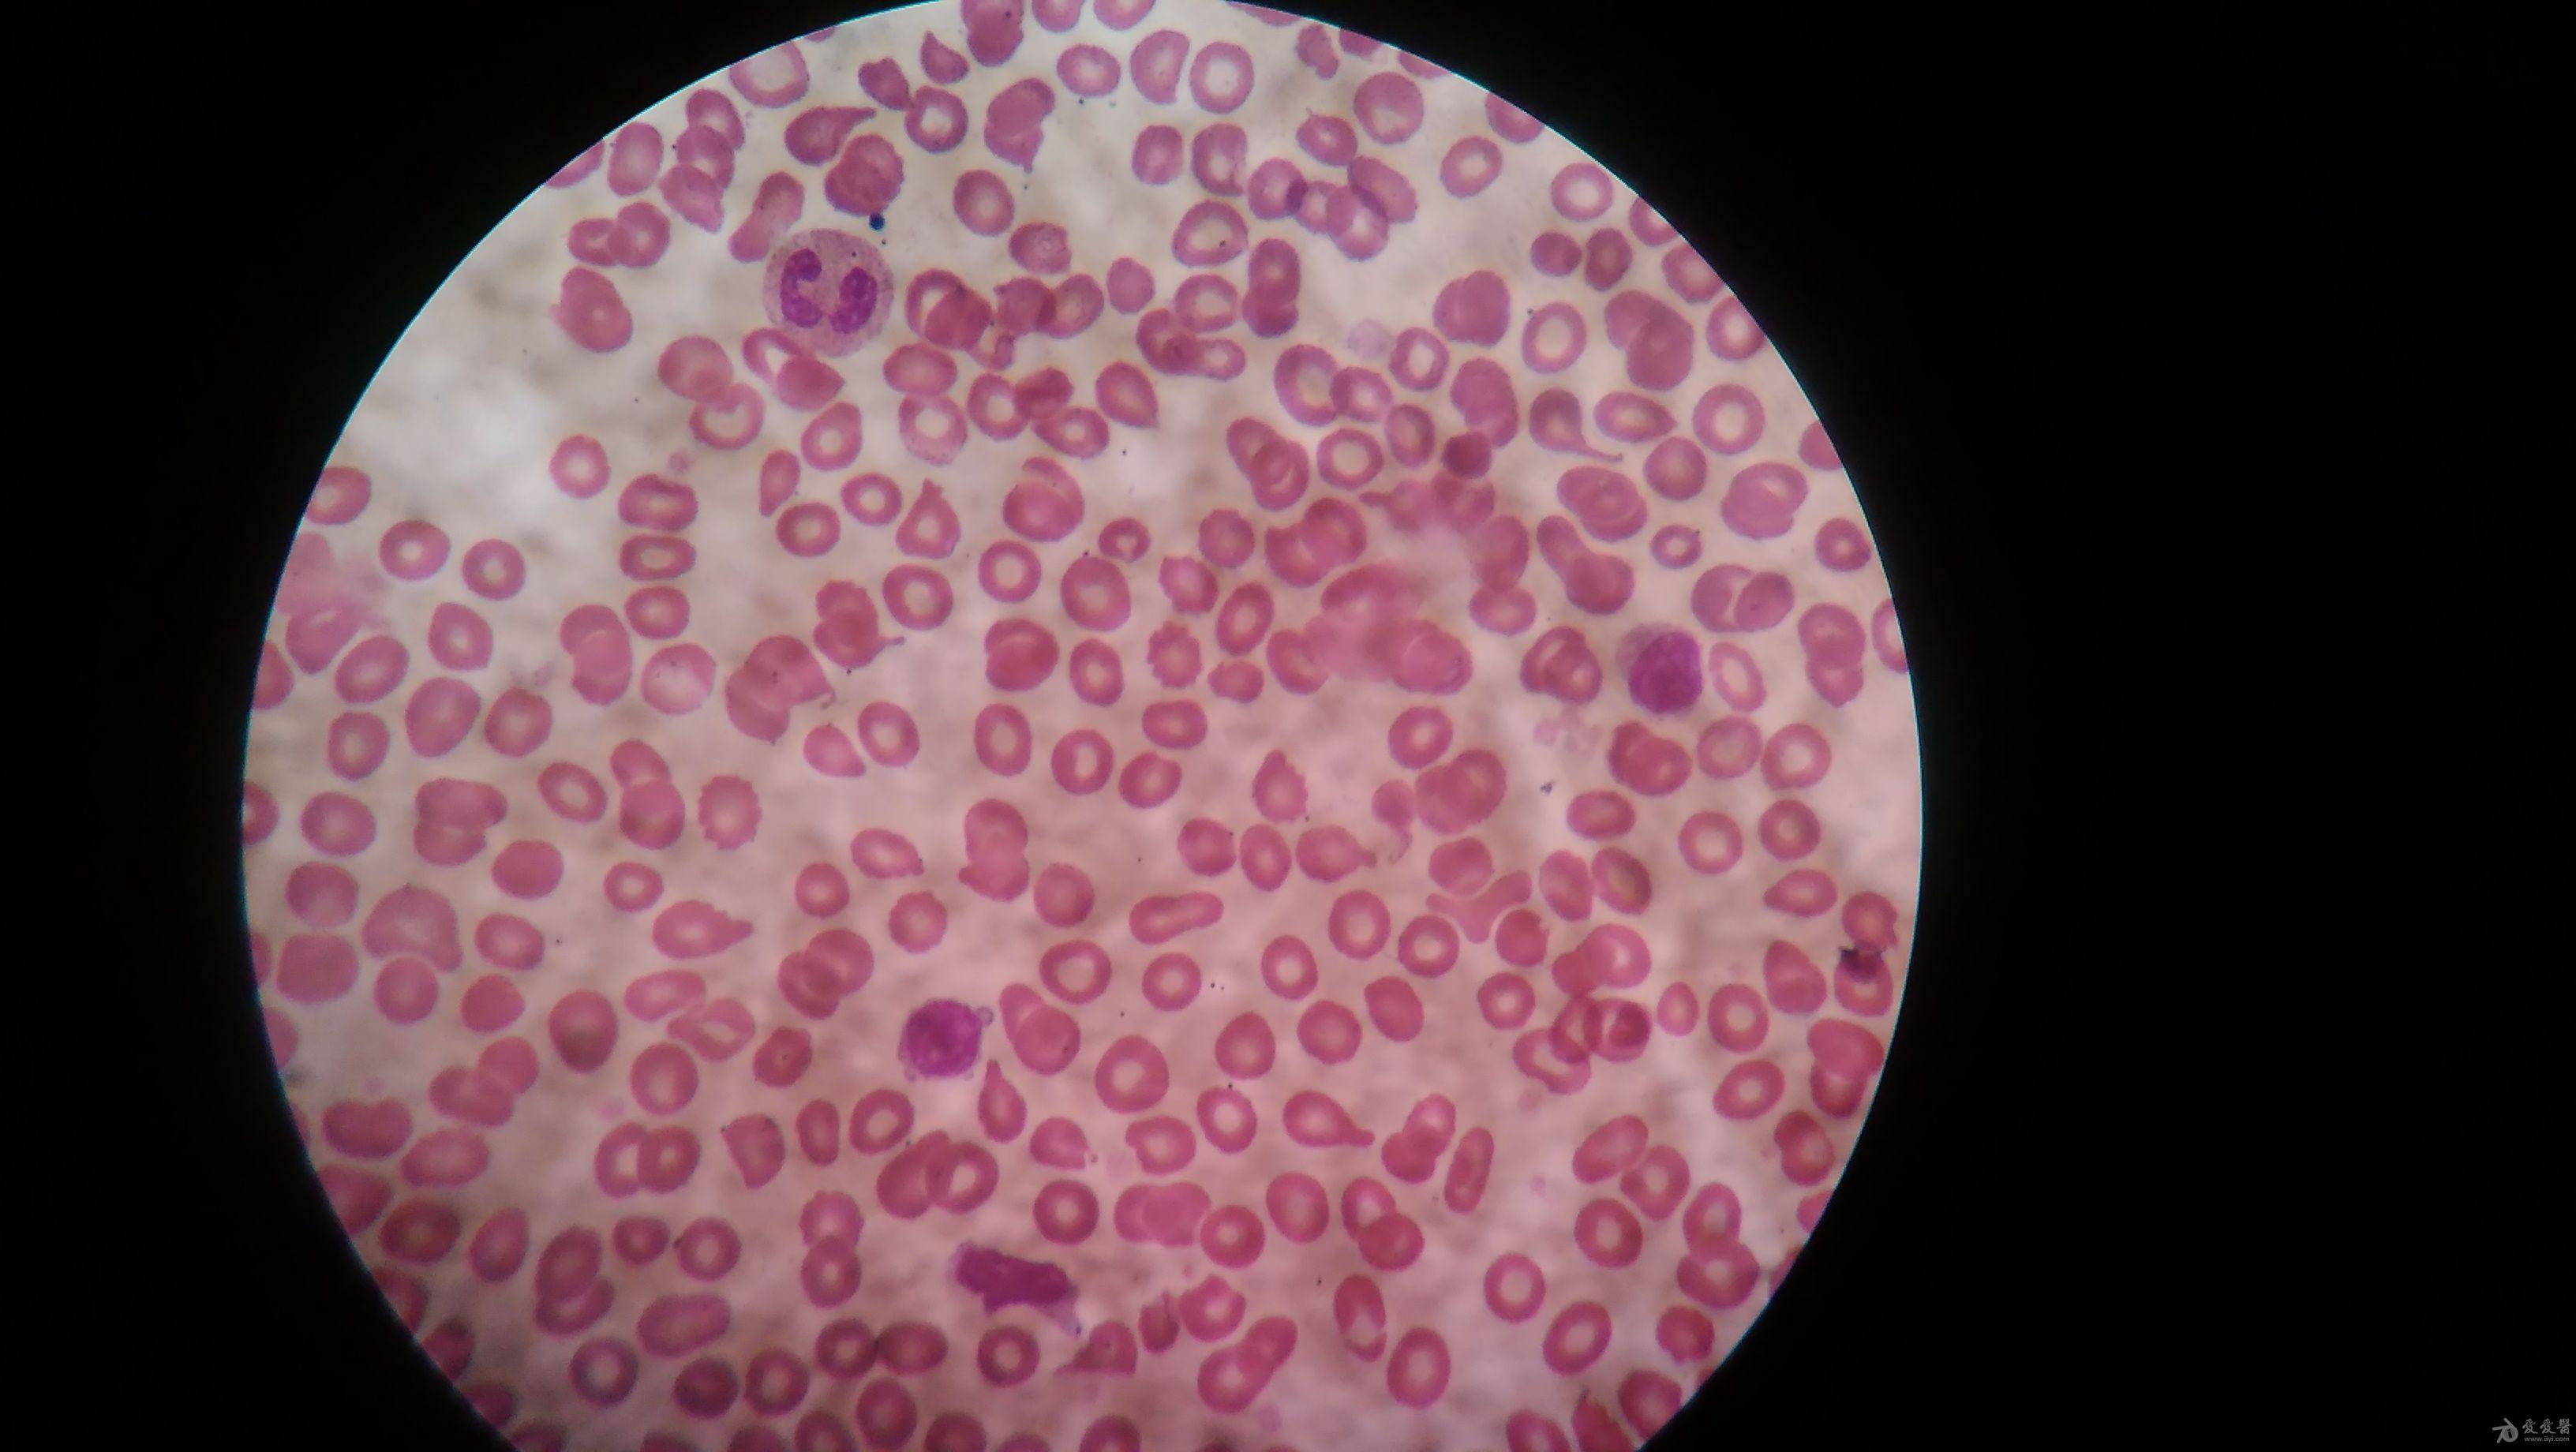 学涂片请教,下面血涂片有原始细胞吗 血液与风湿免疫专业讨论版